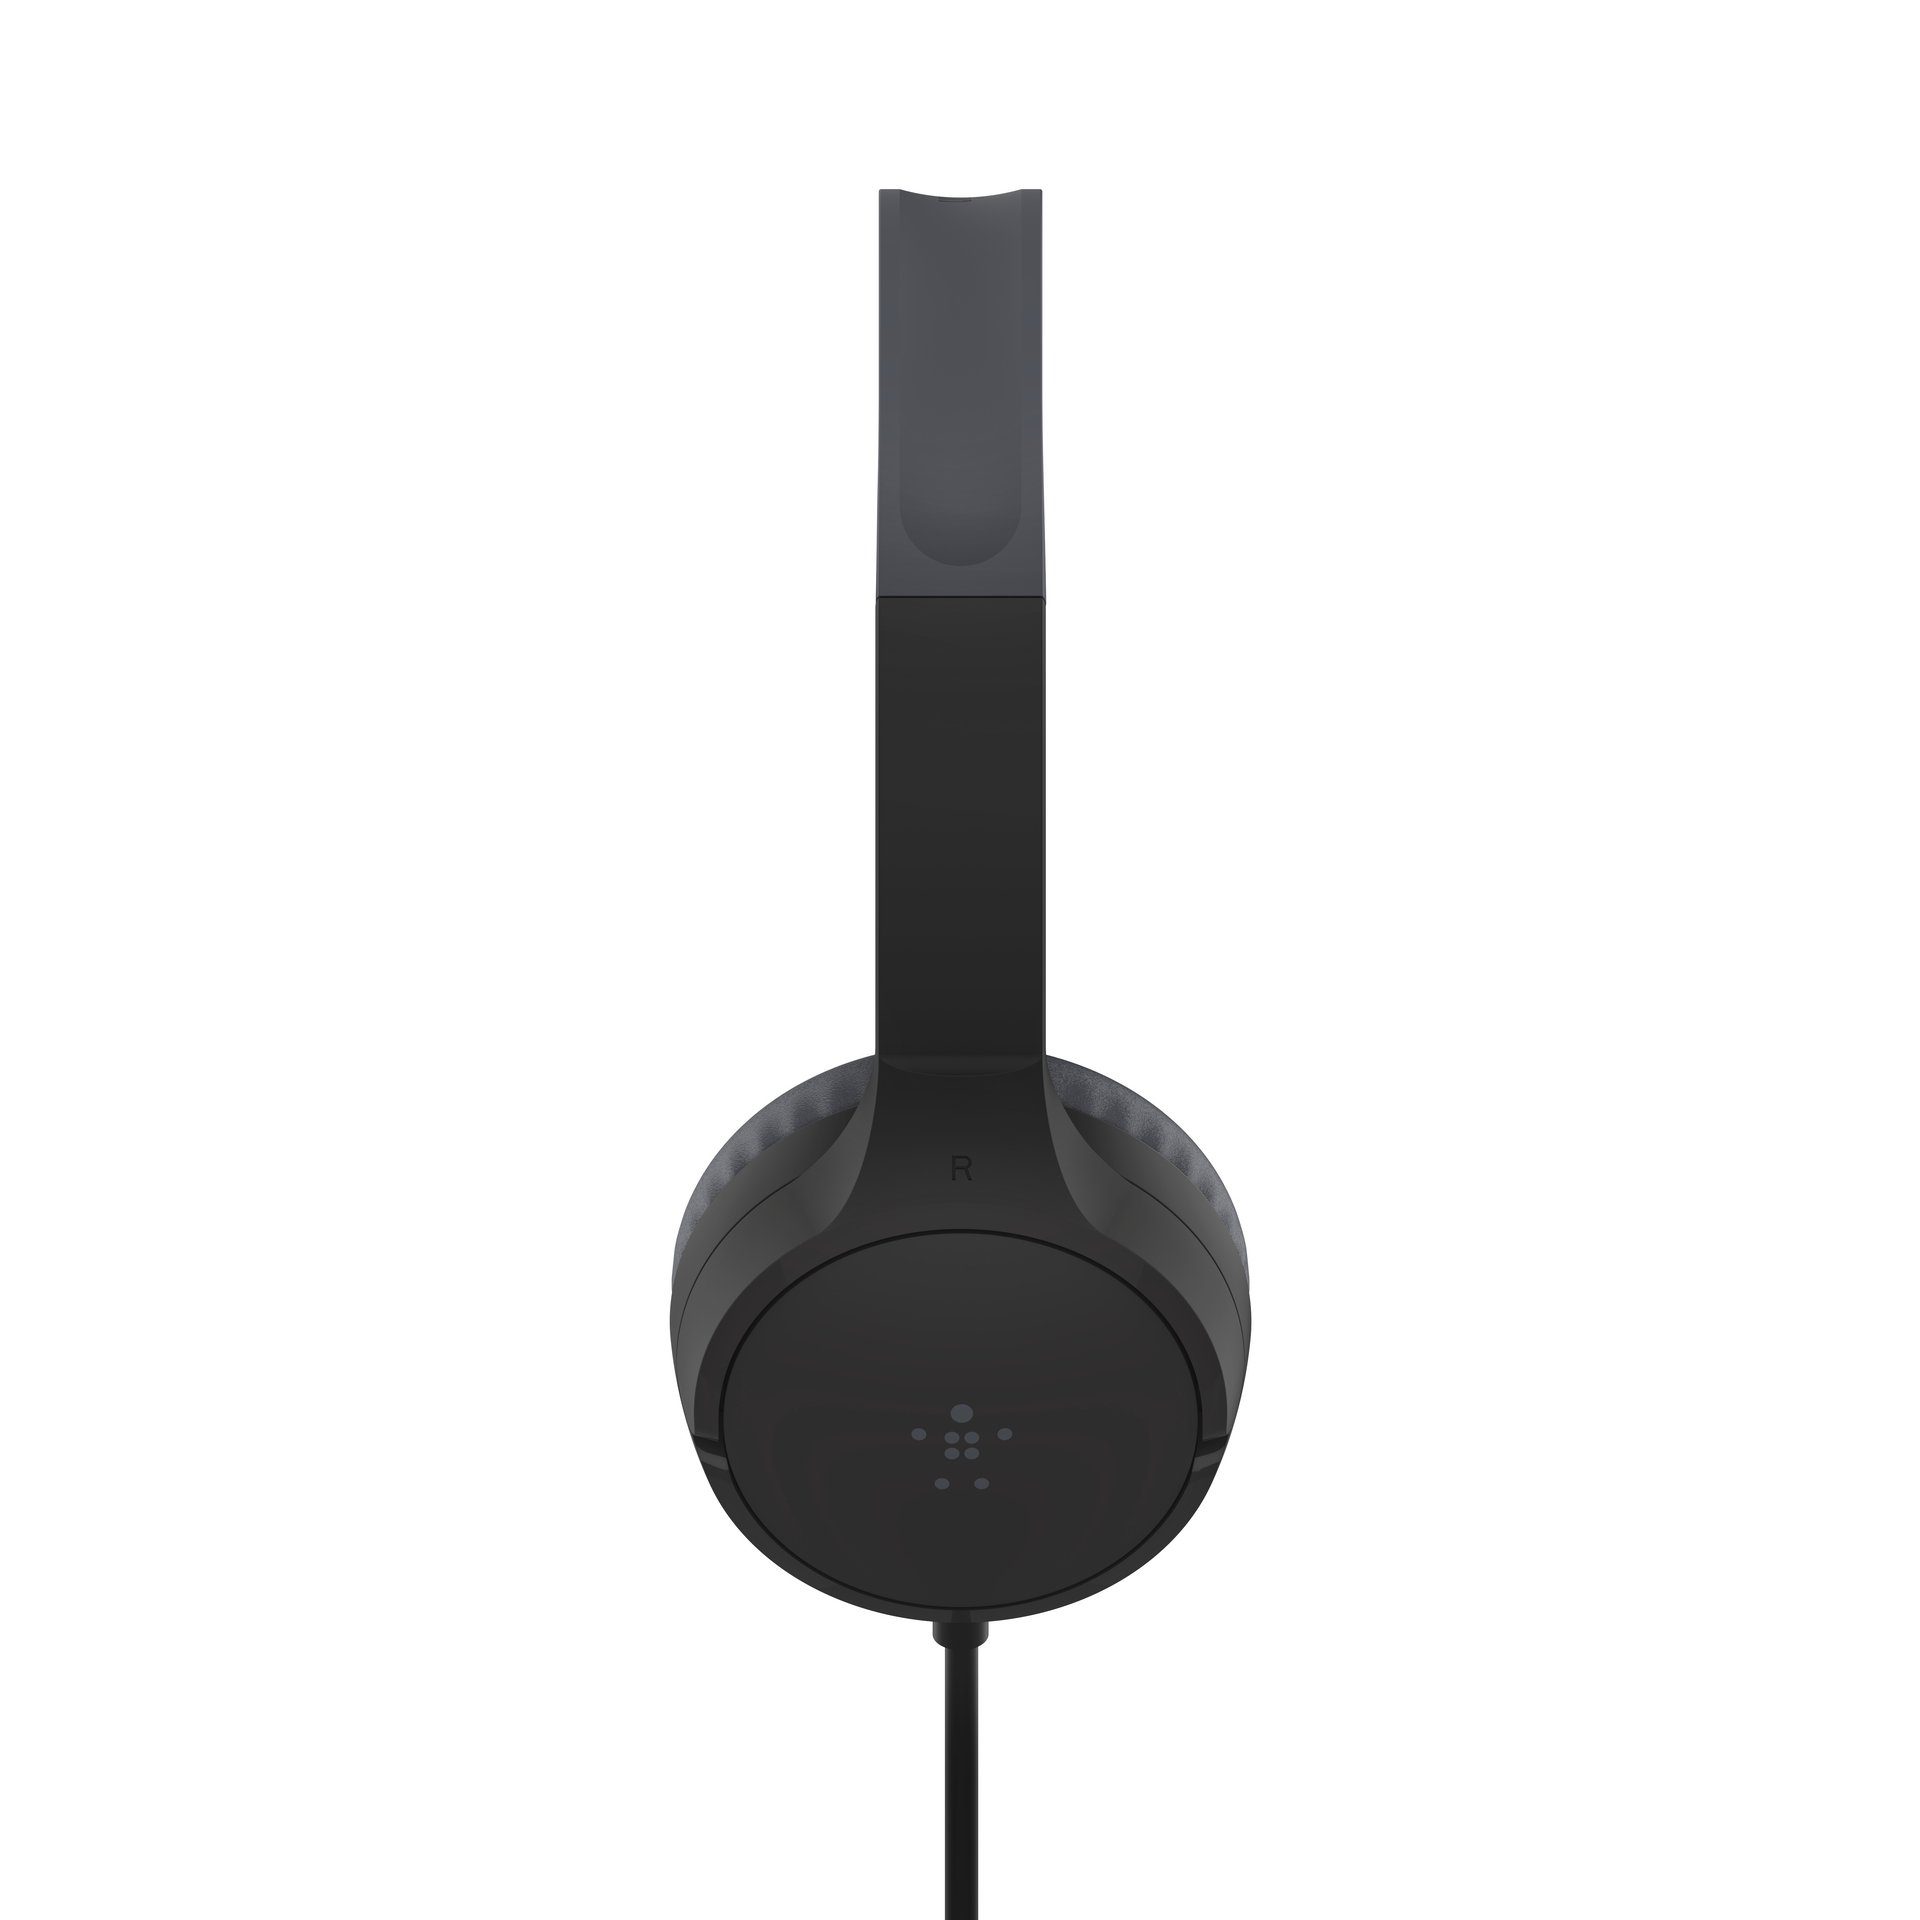 Schwarz (kabelgebunden) Belkin On-Ear-Kopfhörer Mini SOUNDFORM